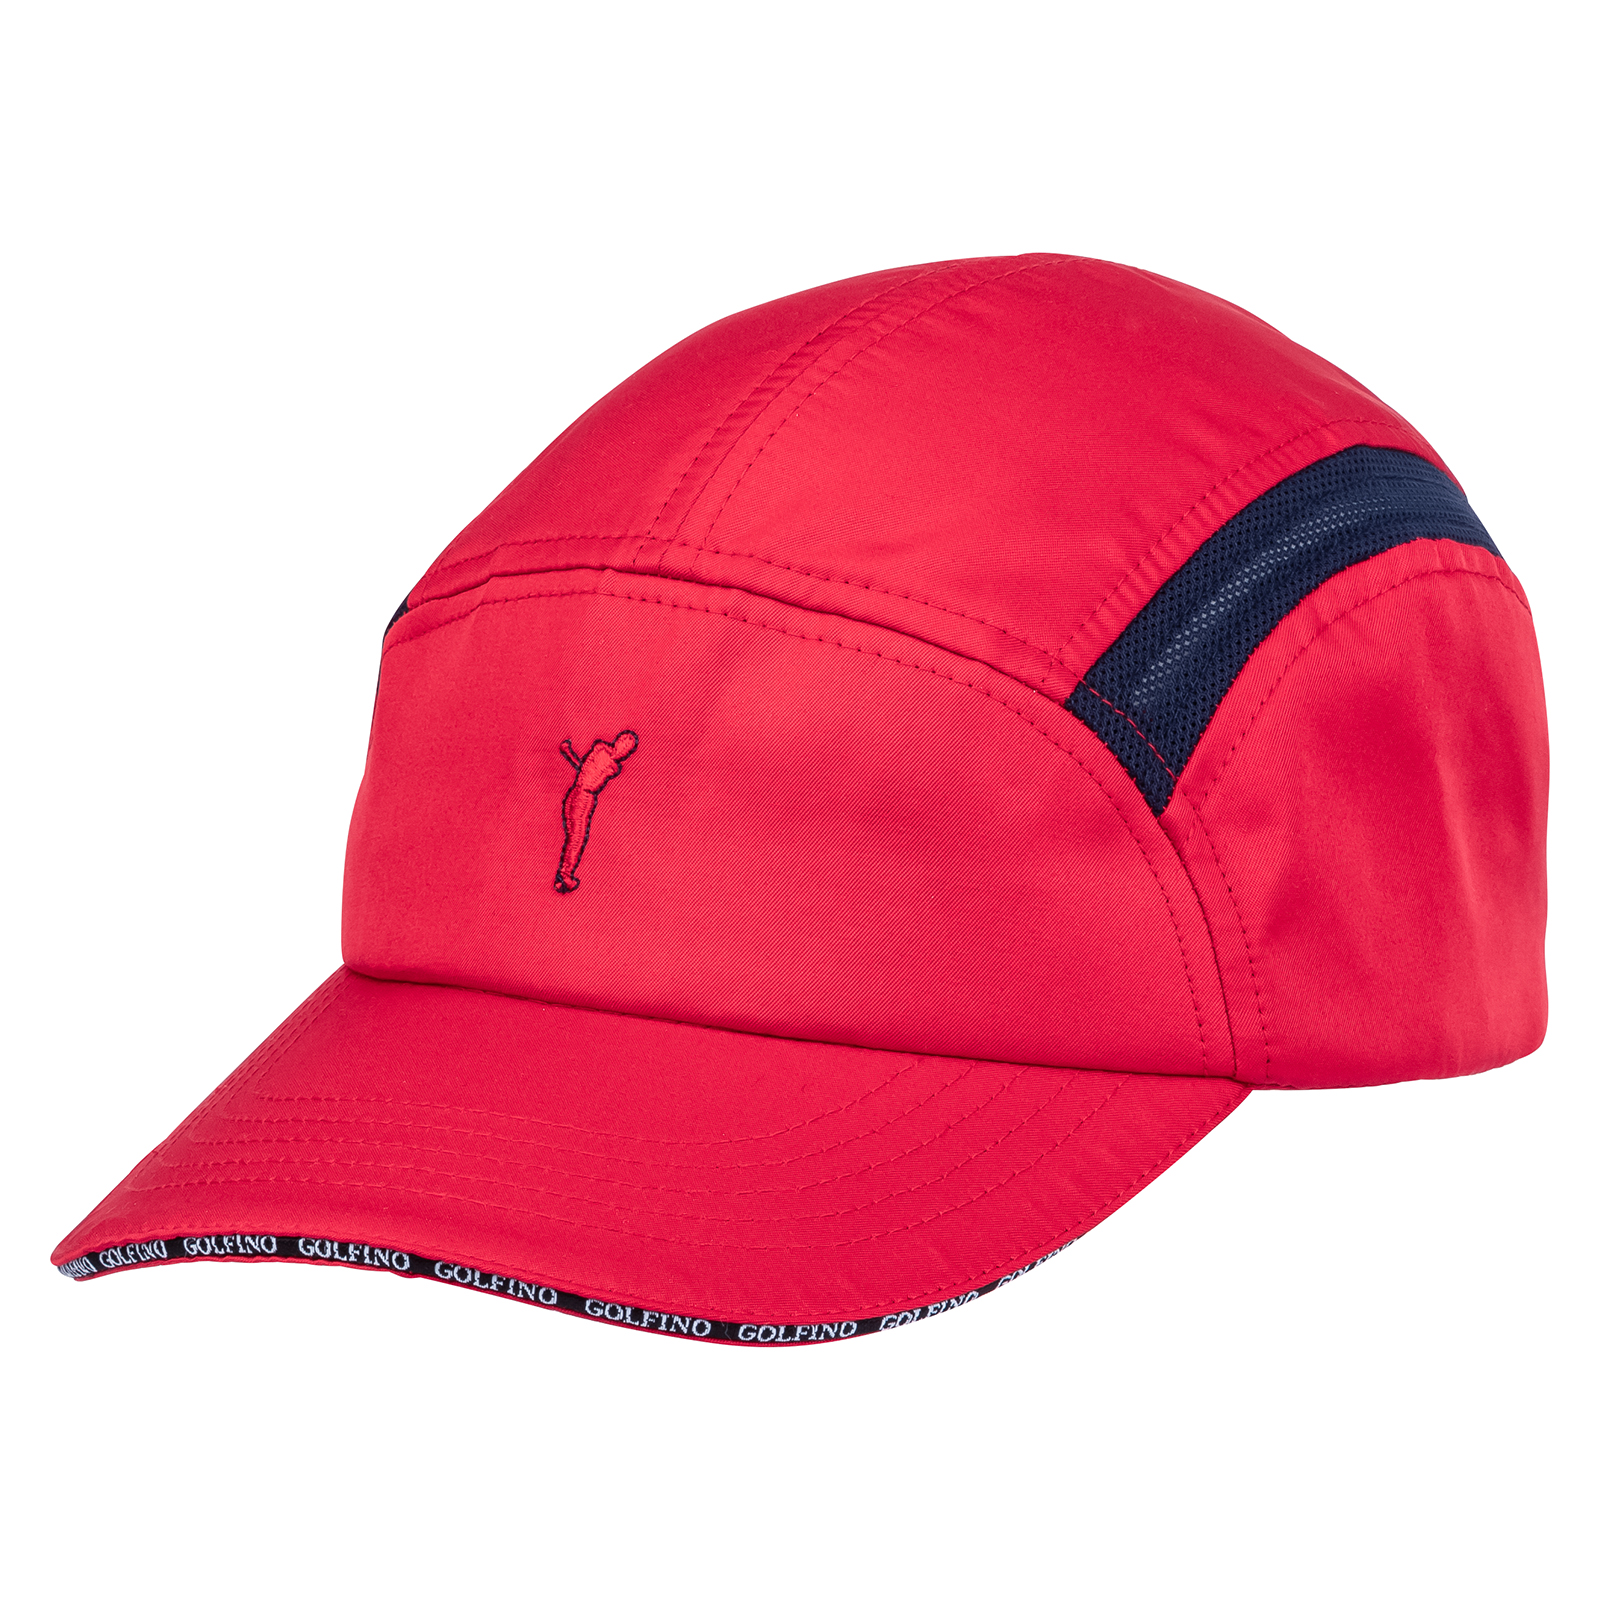 Men's lightweight golf cap with good breathing properties 